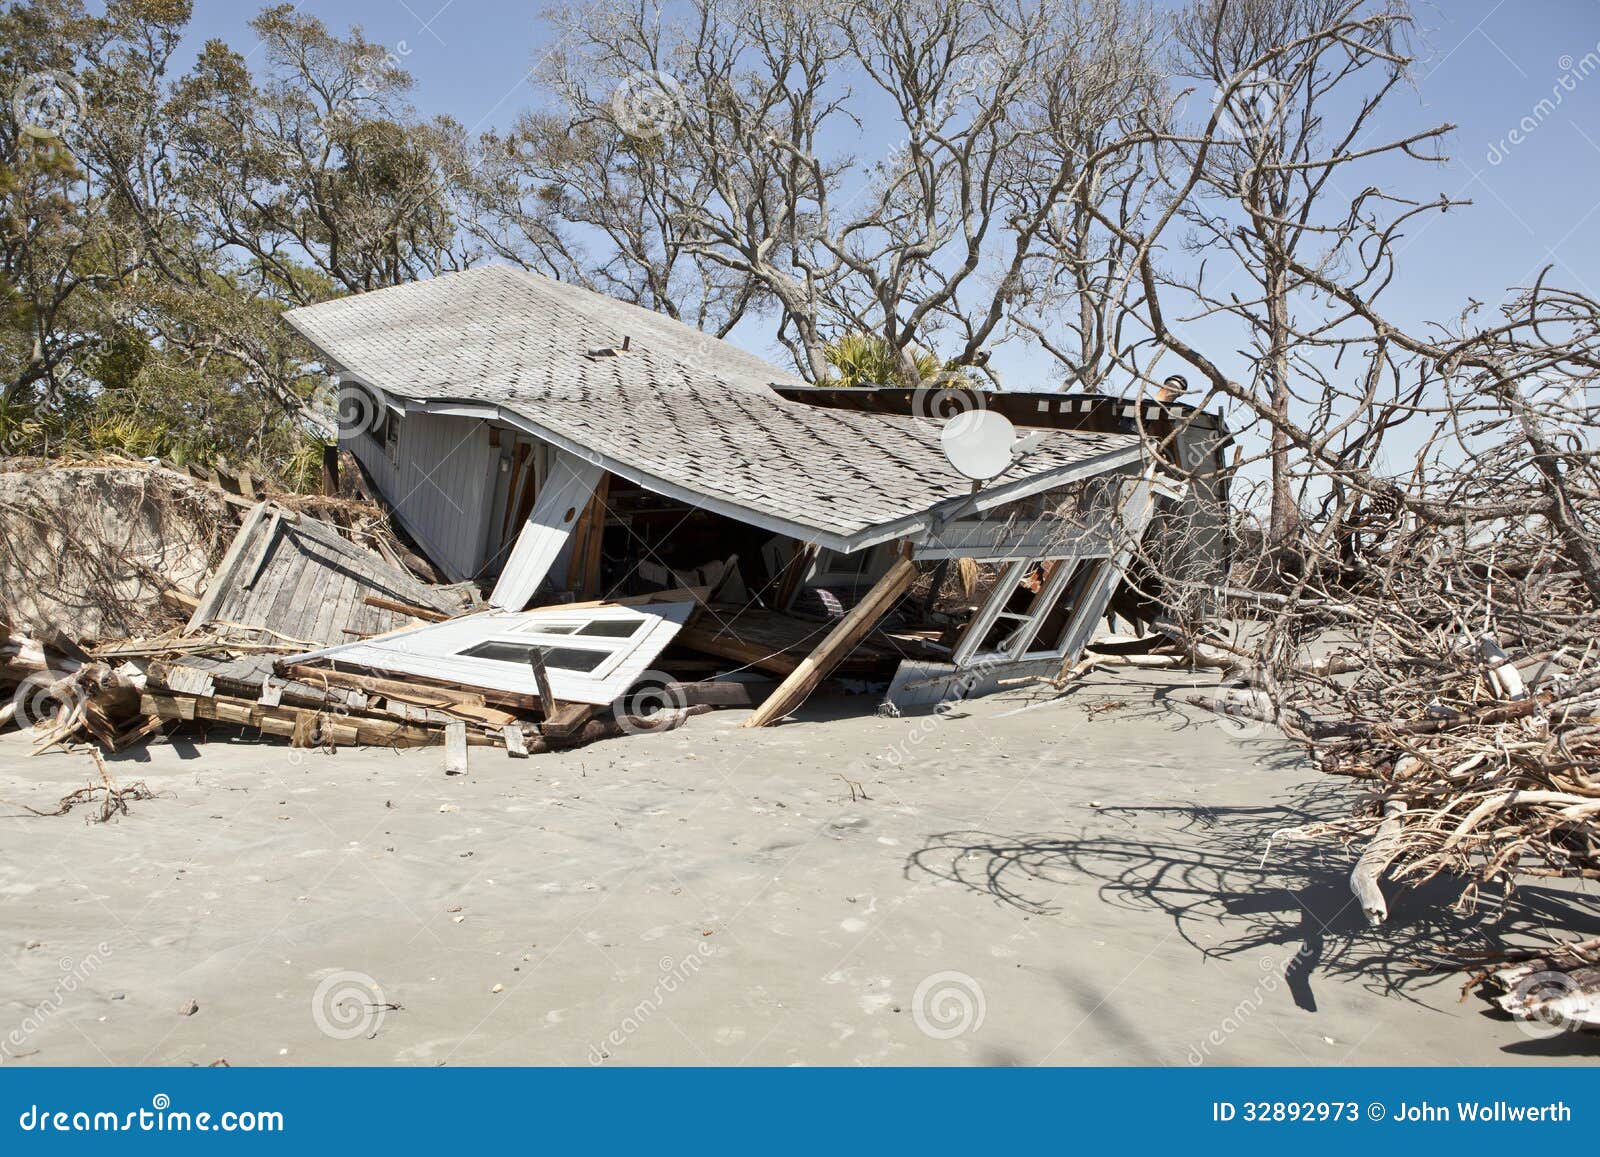 Covid19 - Venezuela crisis economica - Página 20 Casa-destruida-por-la-inundaci%C3%B3n-32892973